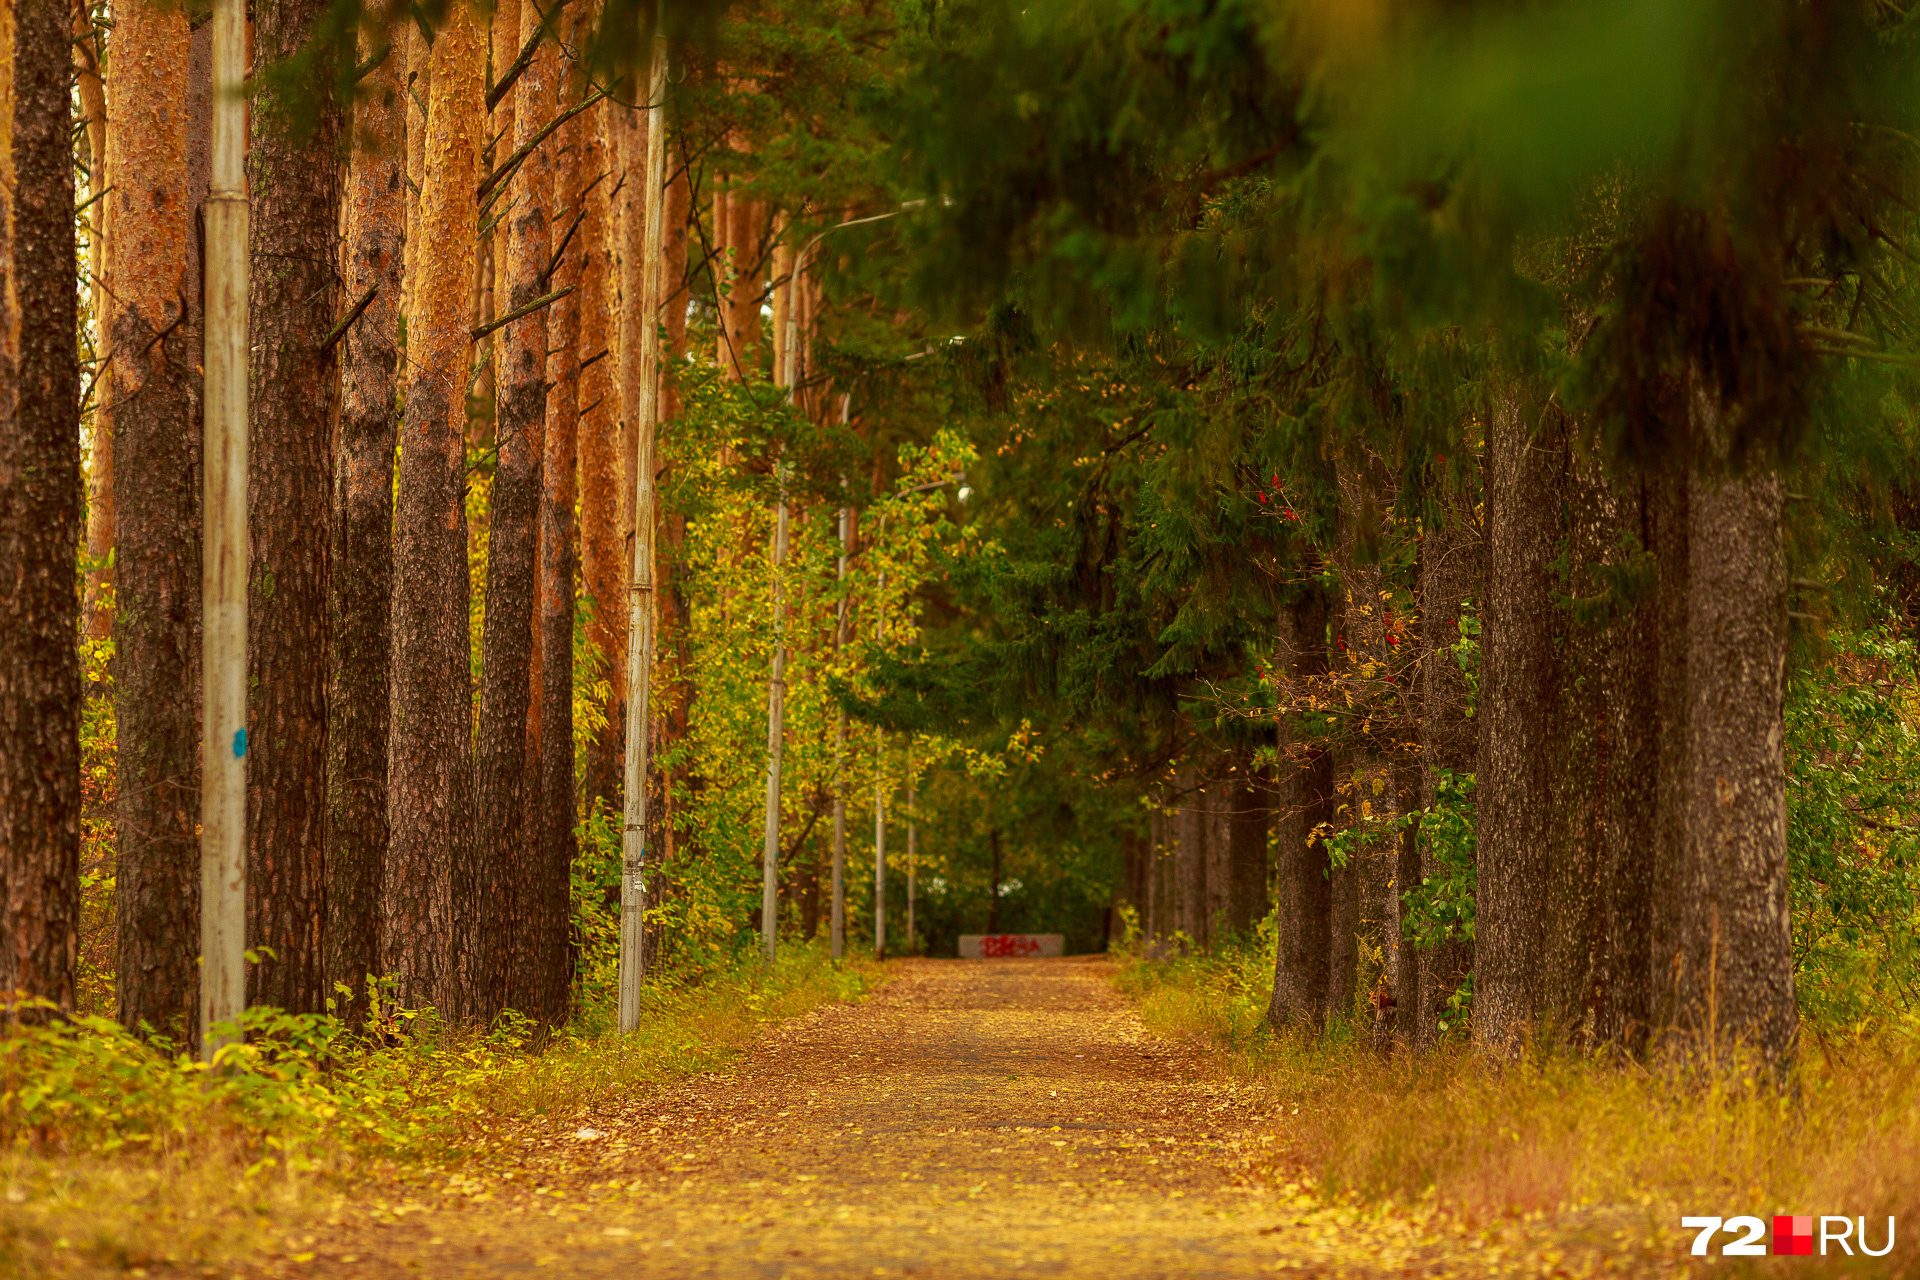 Прогулка по лесу — всегда хорошая идея. Осенью — особенно